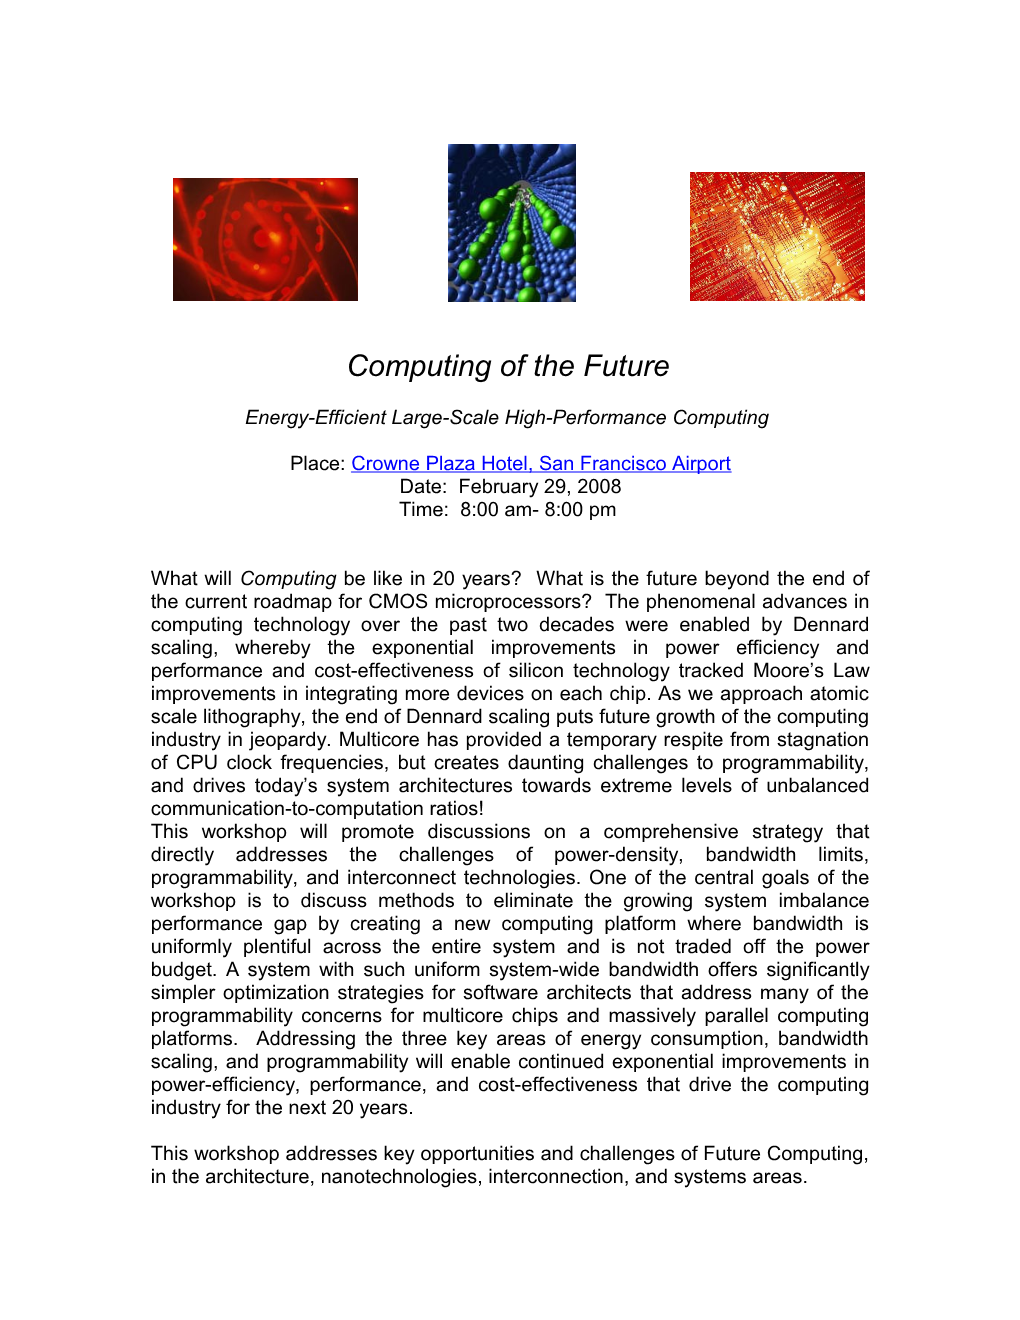 Computing of the Future Consortium